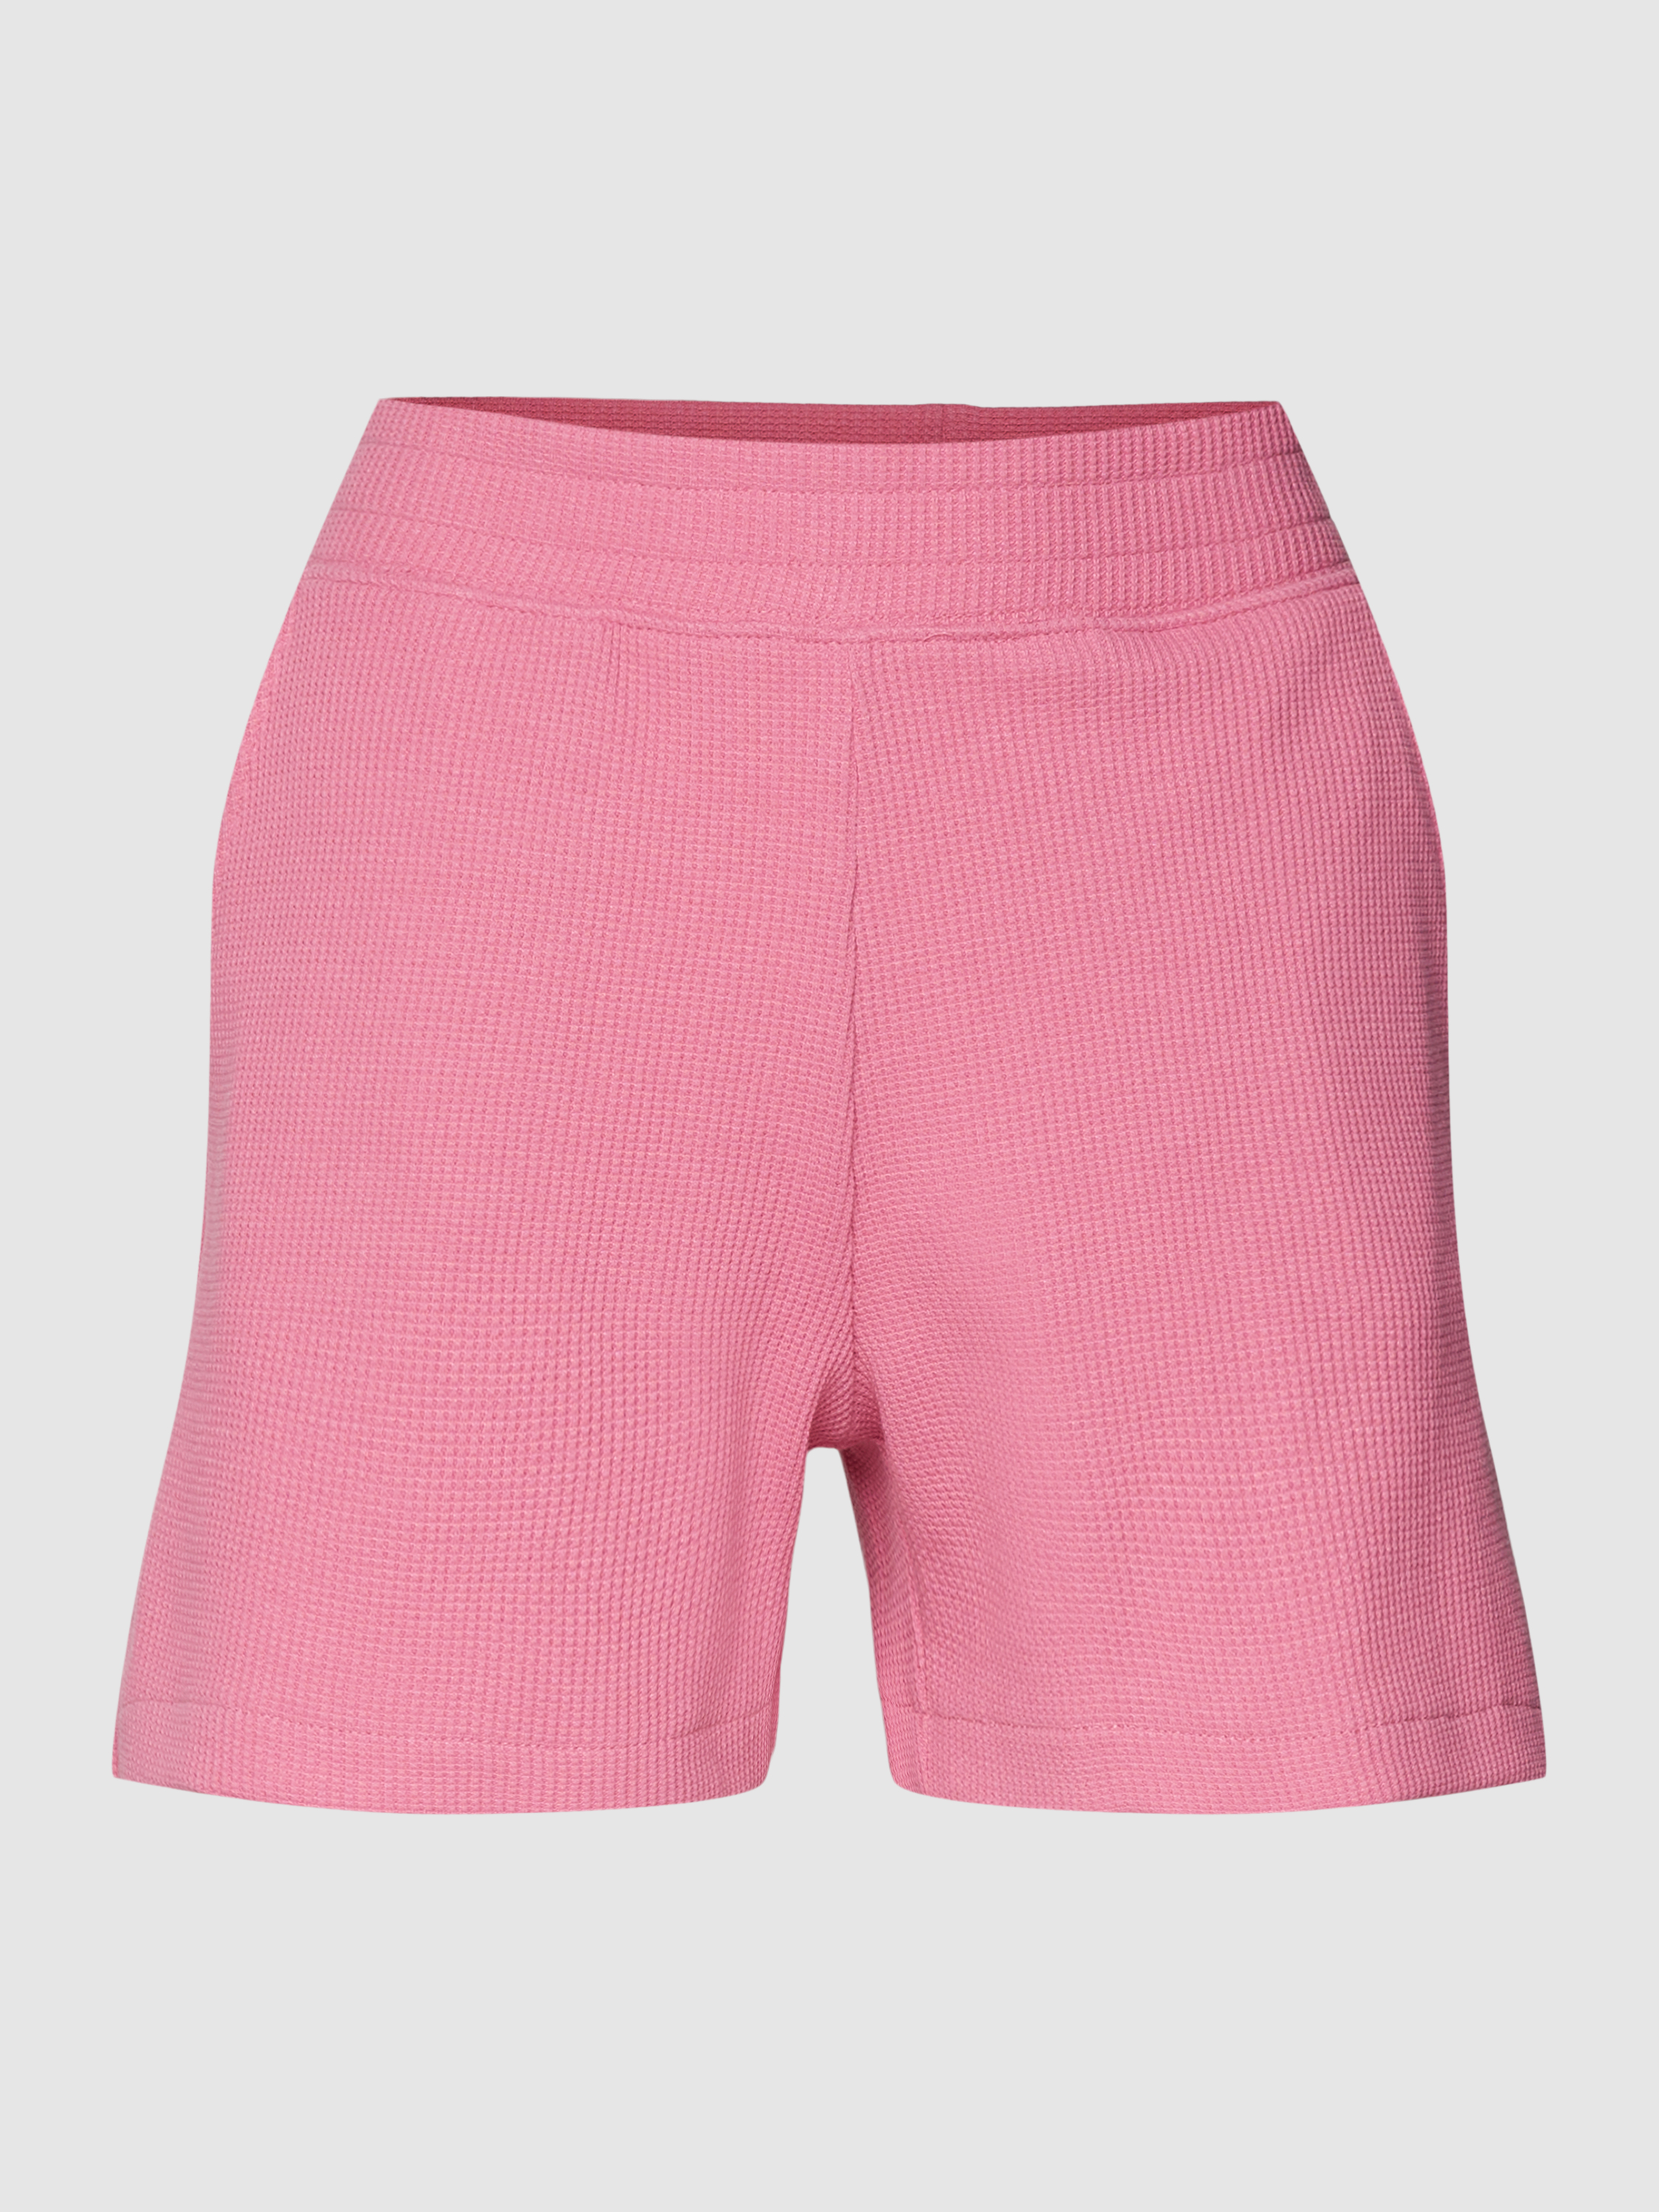 Трикотажные шорты женские Jake*s Casual 1753302 розовые XS (доставка из-за рубежа)